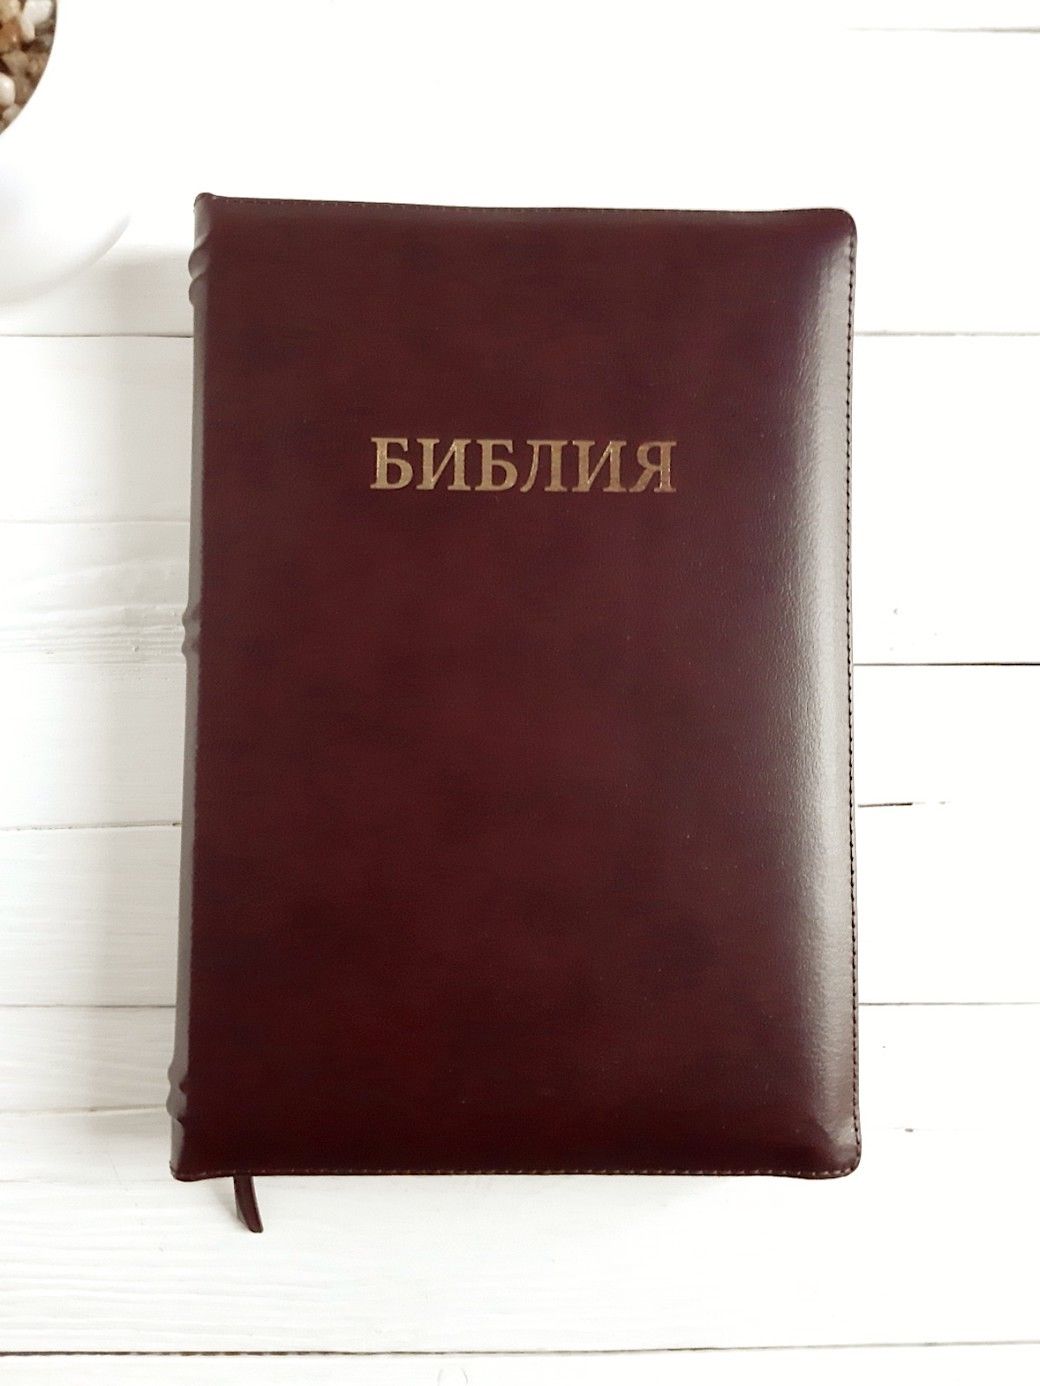 Библия 046 zti формат, цвет коричневый металлик, переплет из натуральной кожи на молнии с индексами, надпись золотом "Библия", средний формат, 132*182 мм, цветные карты, шрифт 12 кегель